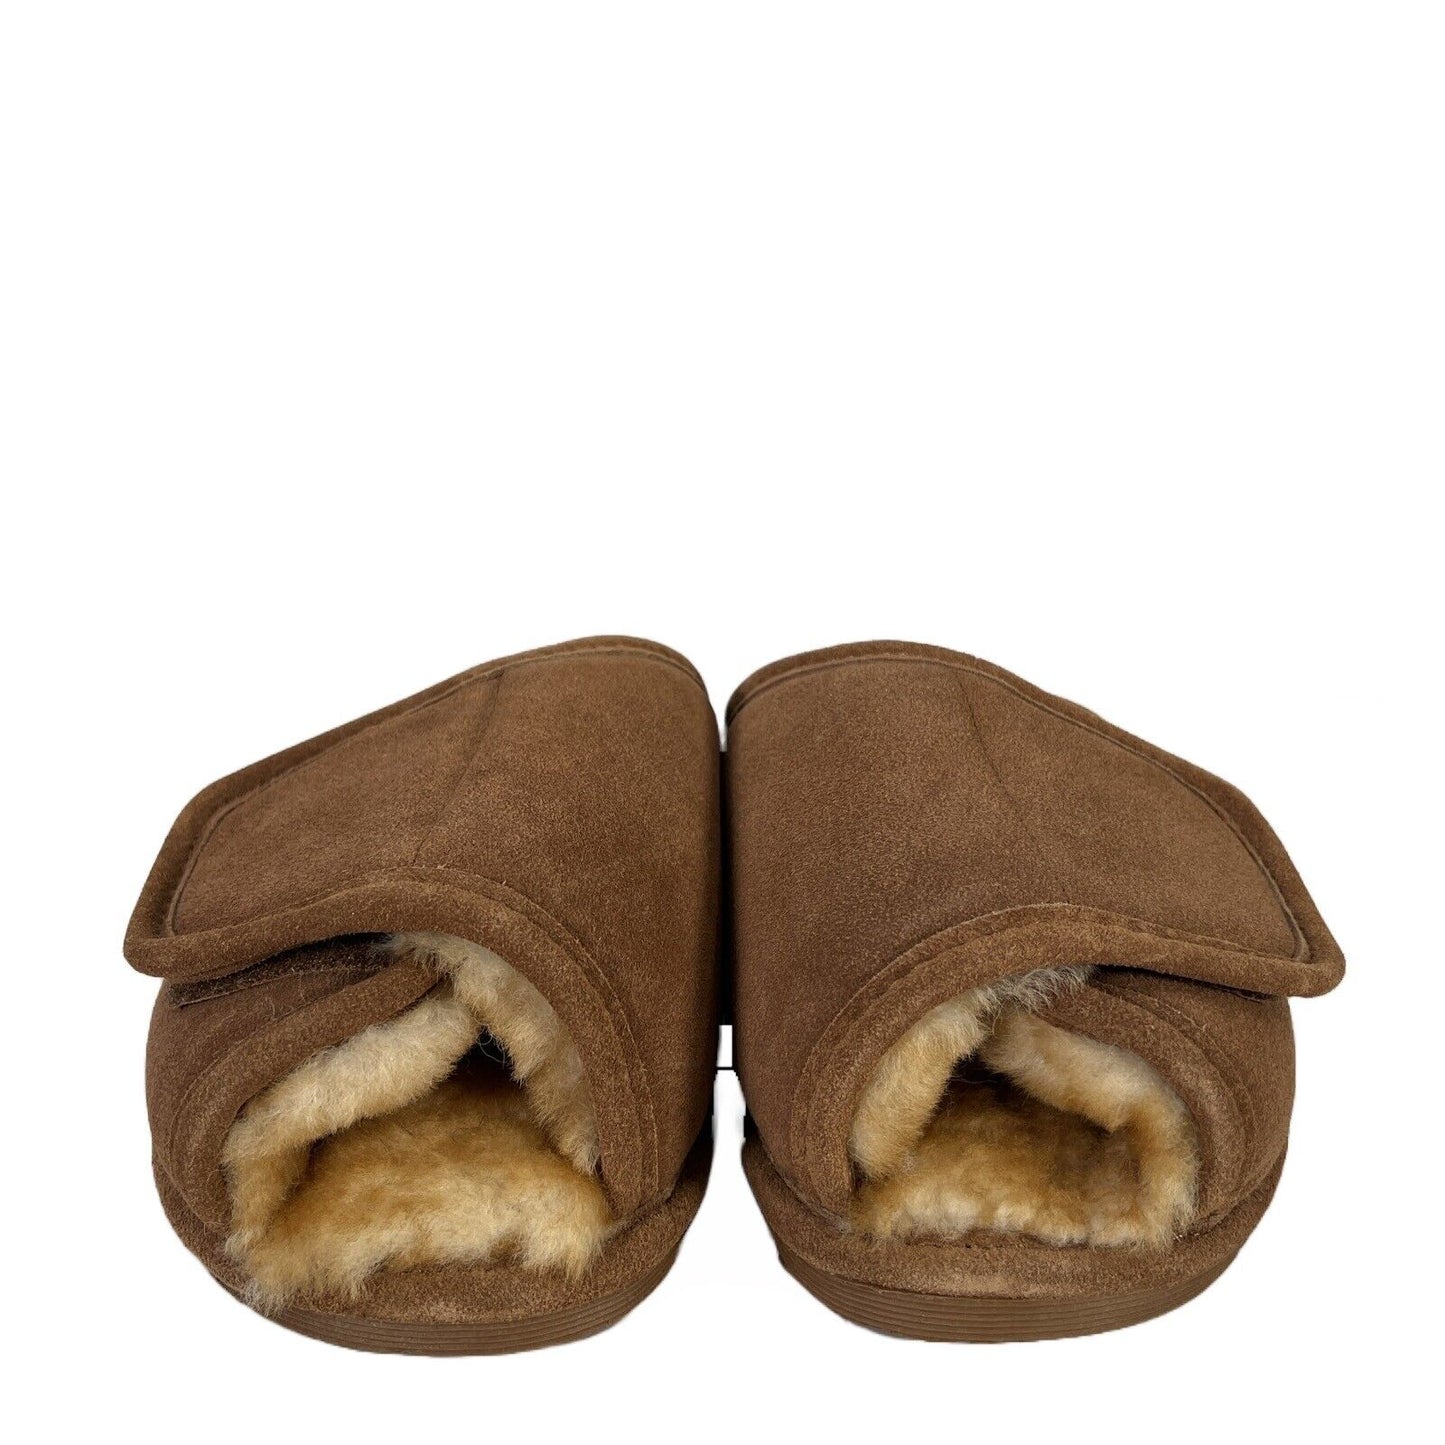 Pantuflas tipo chanclas de piel de oveja marrón de Cloud Nine para hombre - 10-11.5